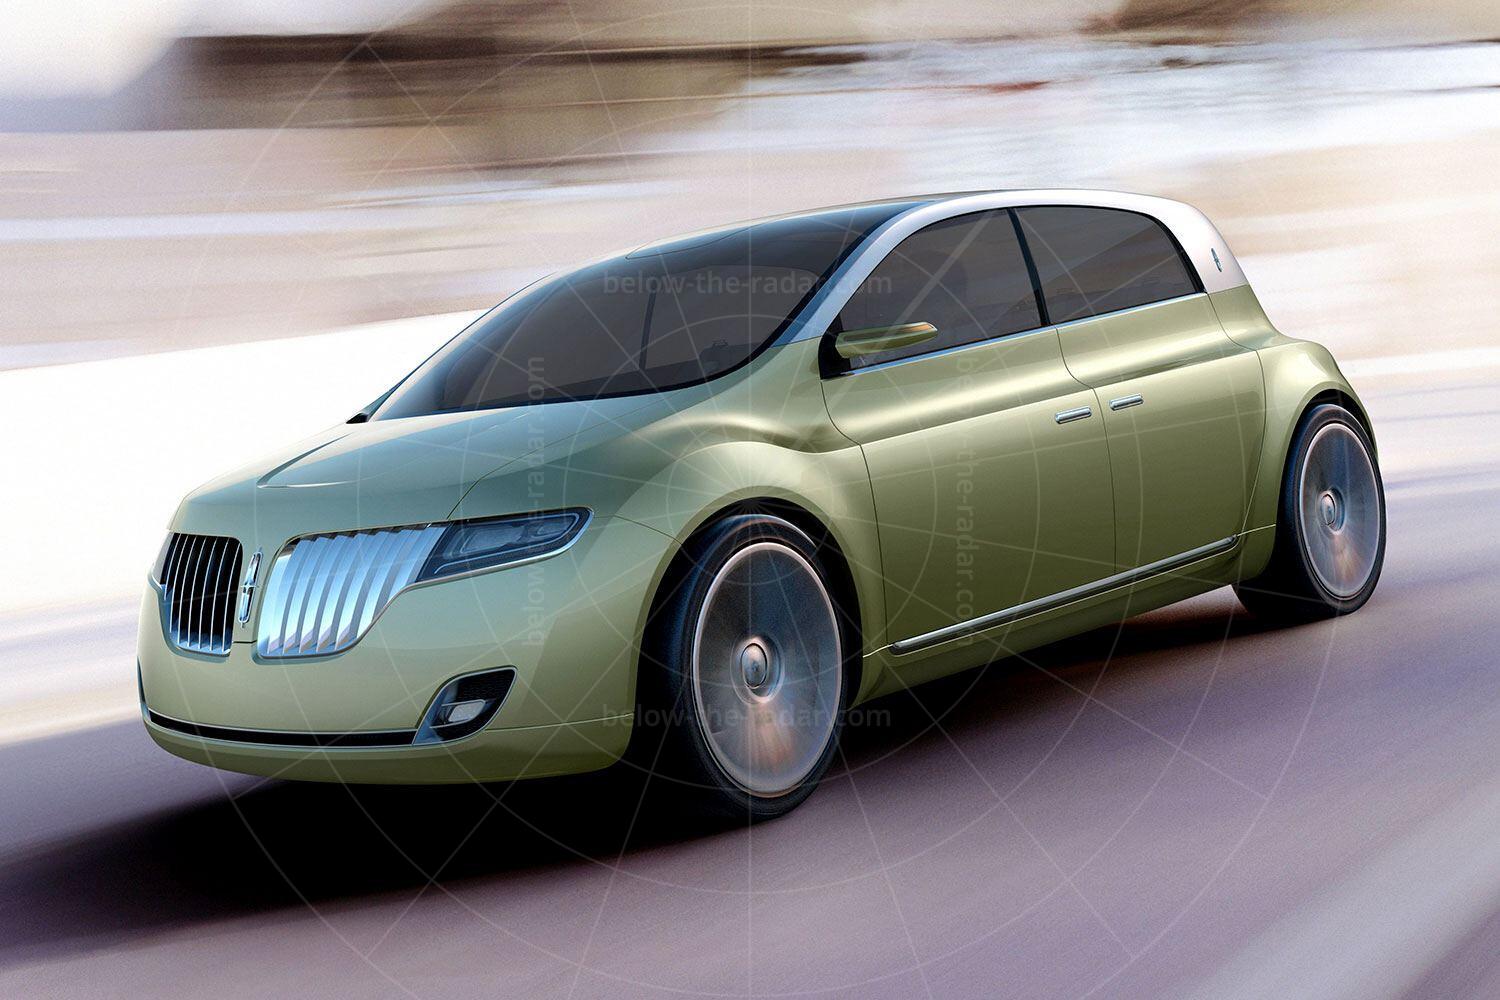 Lincoln C Concept Pic: Lincoln | Lincoln C concept